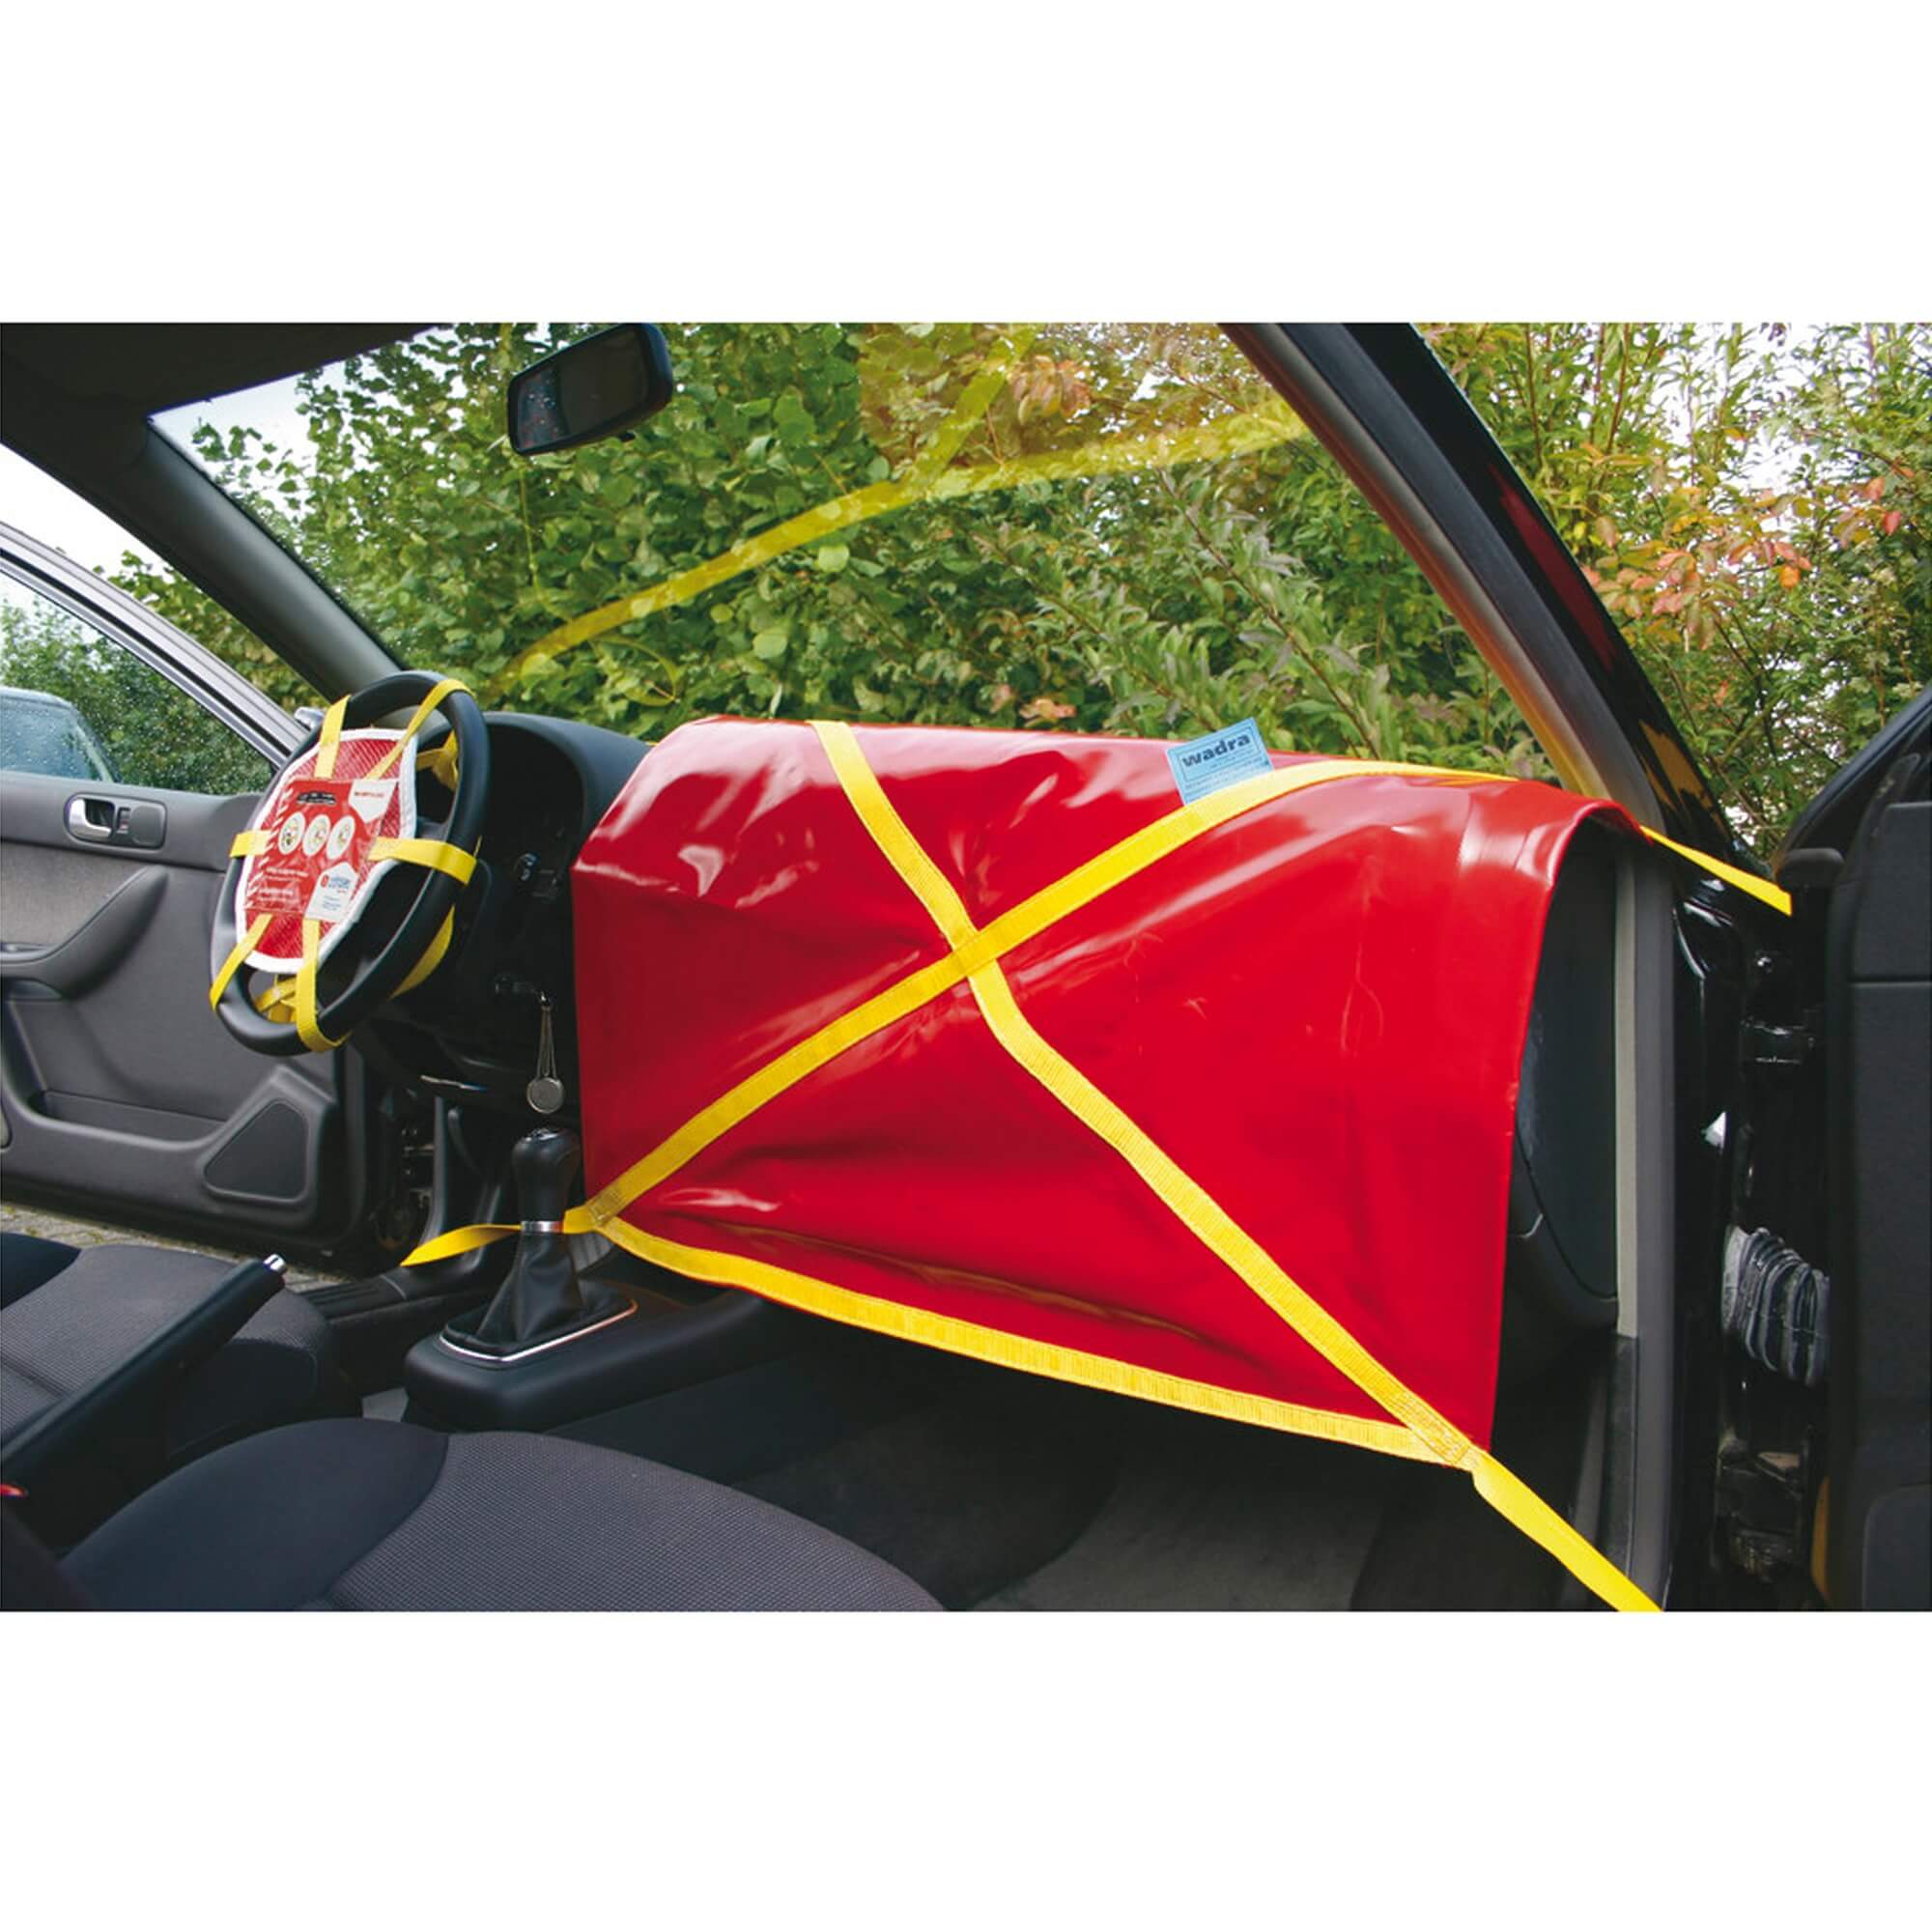 Dönges passenger airbag safety system